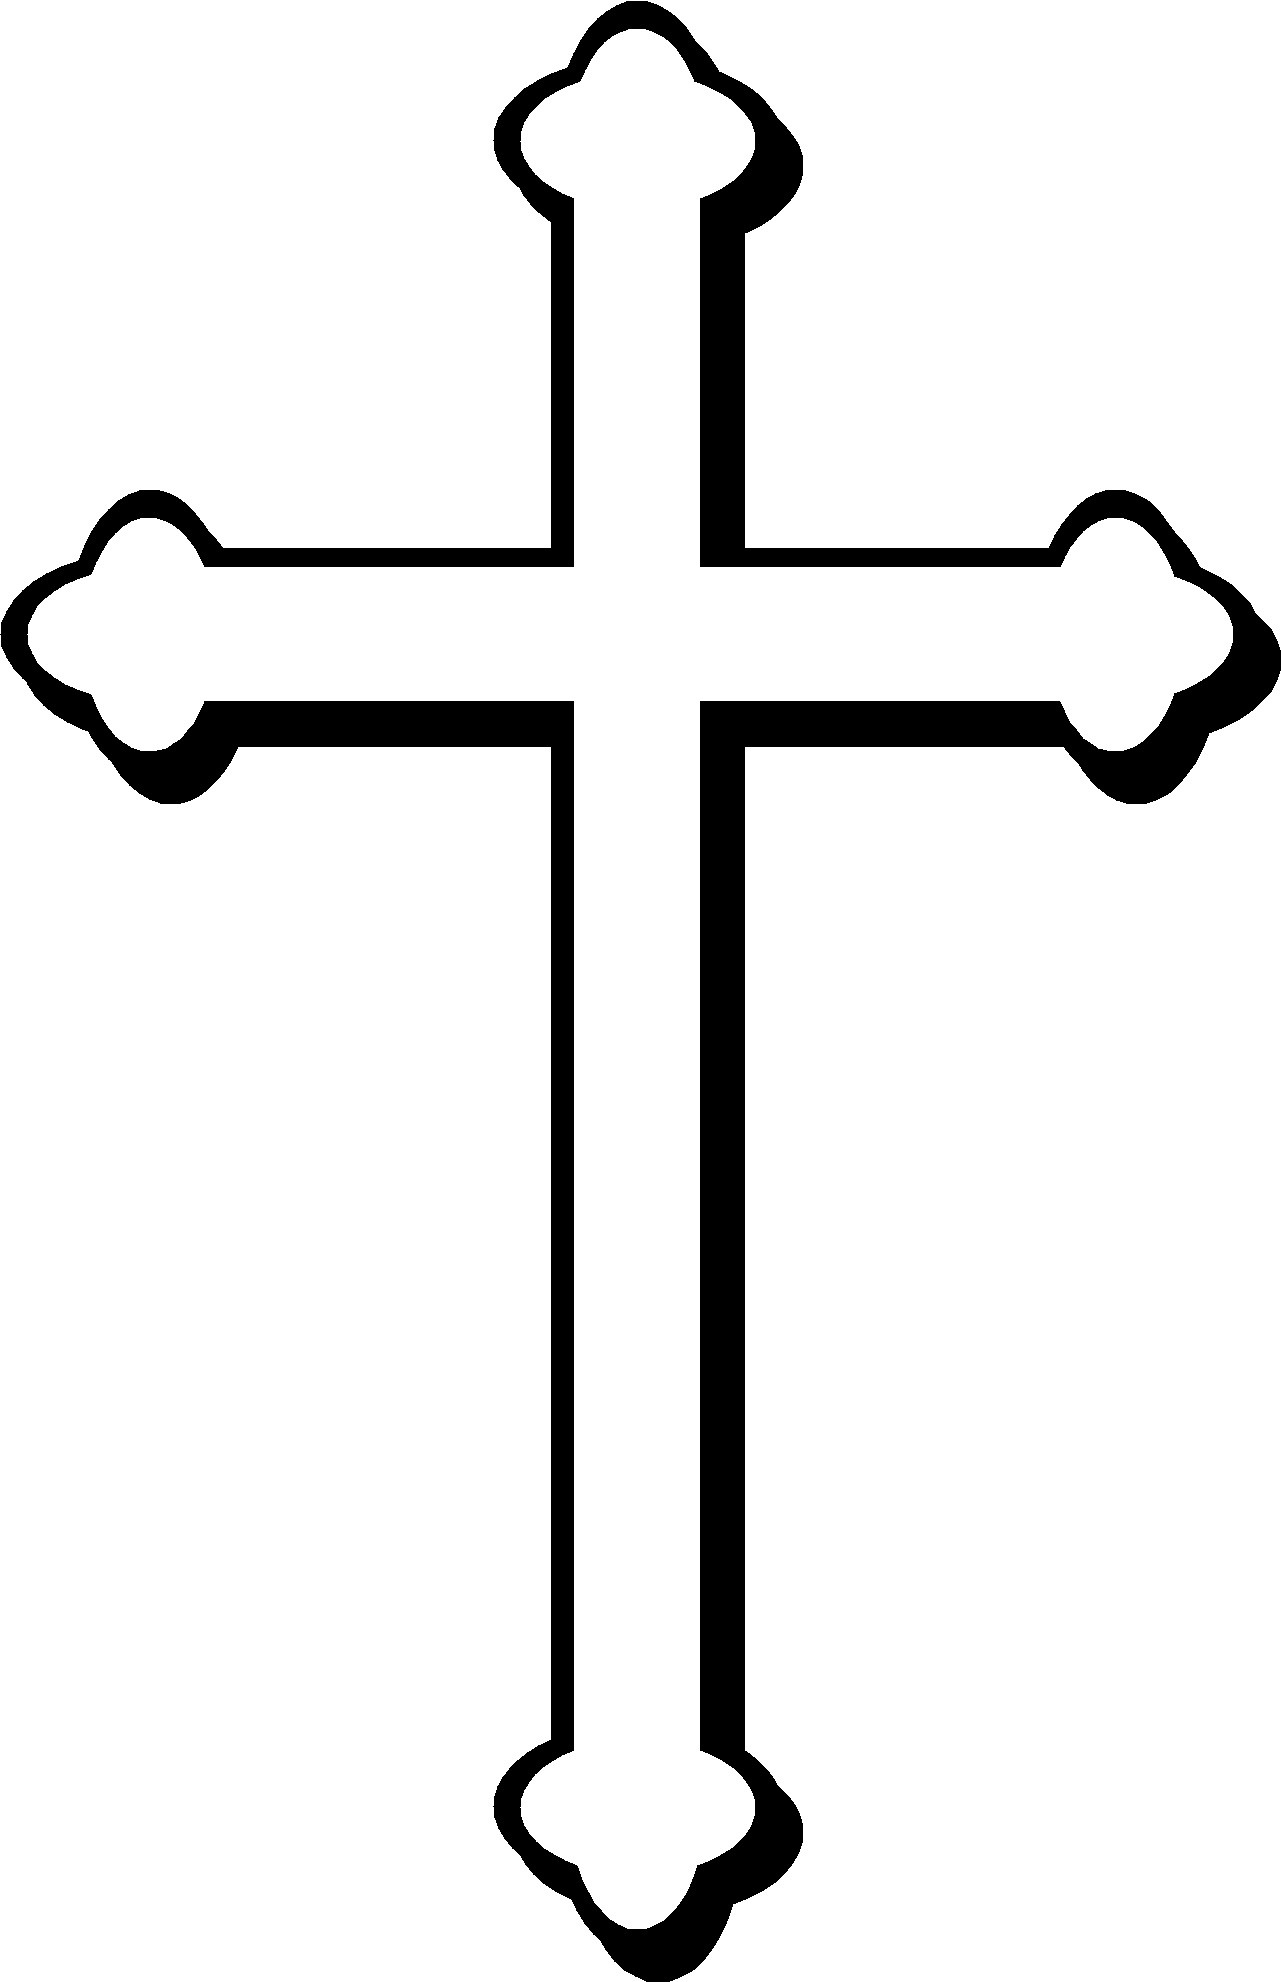 Christian logos clip art - ClipartFox